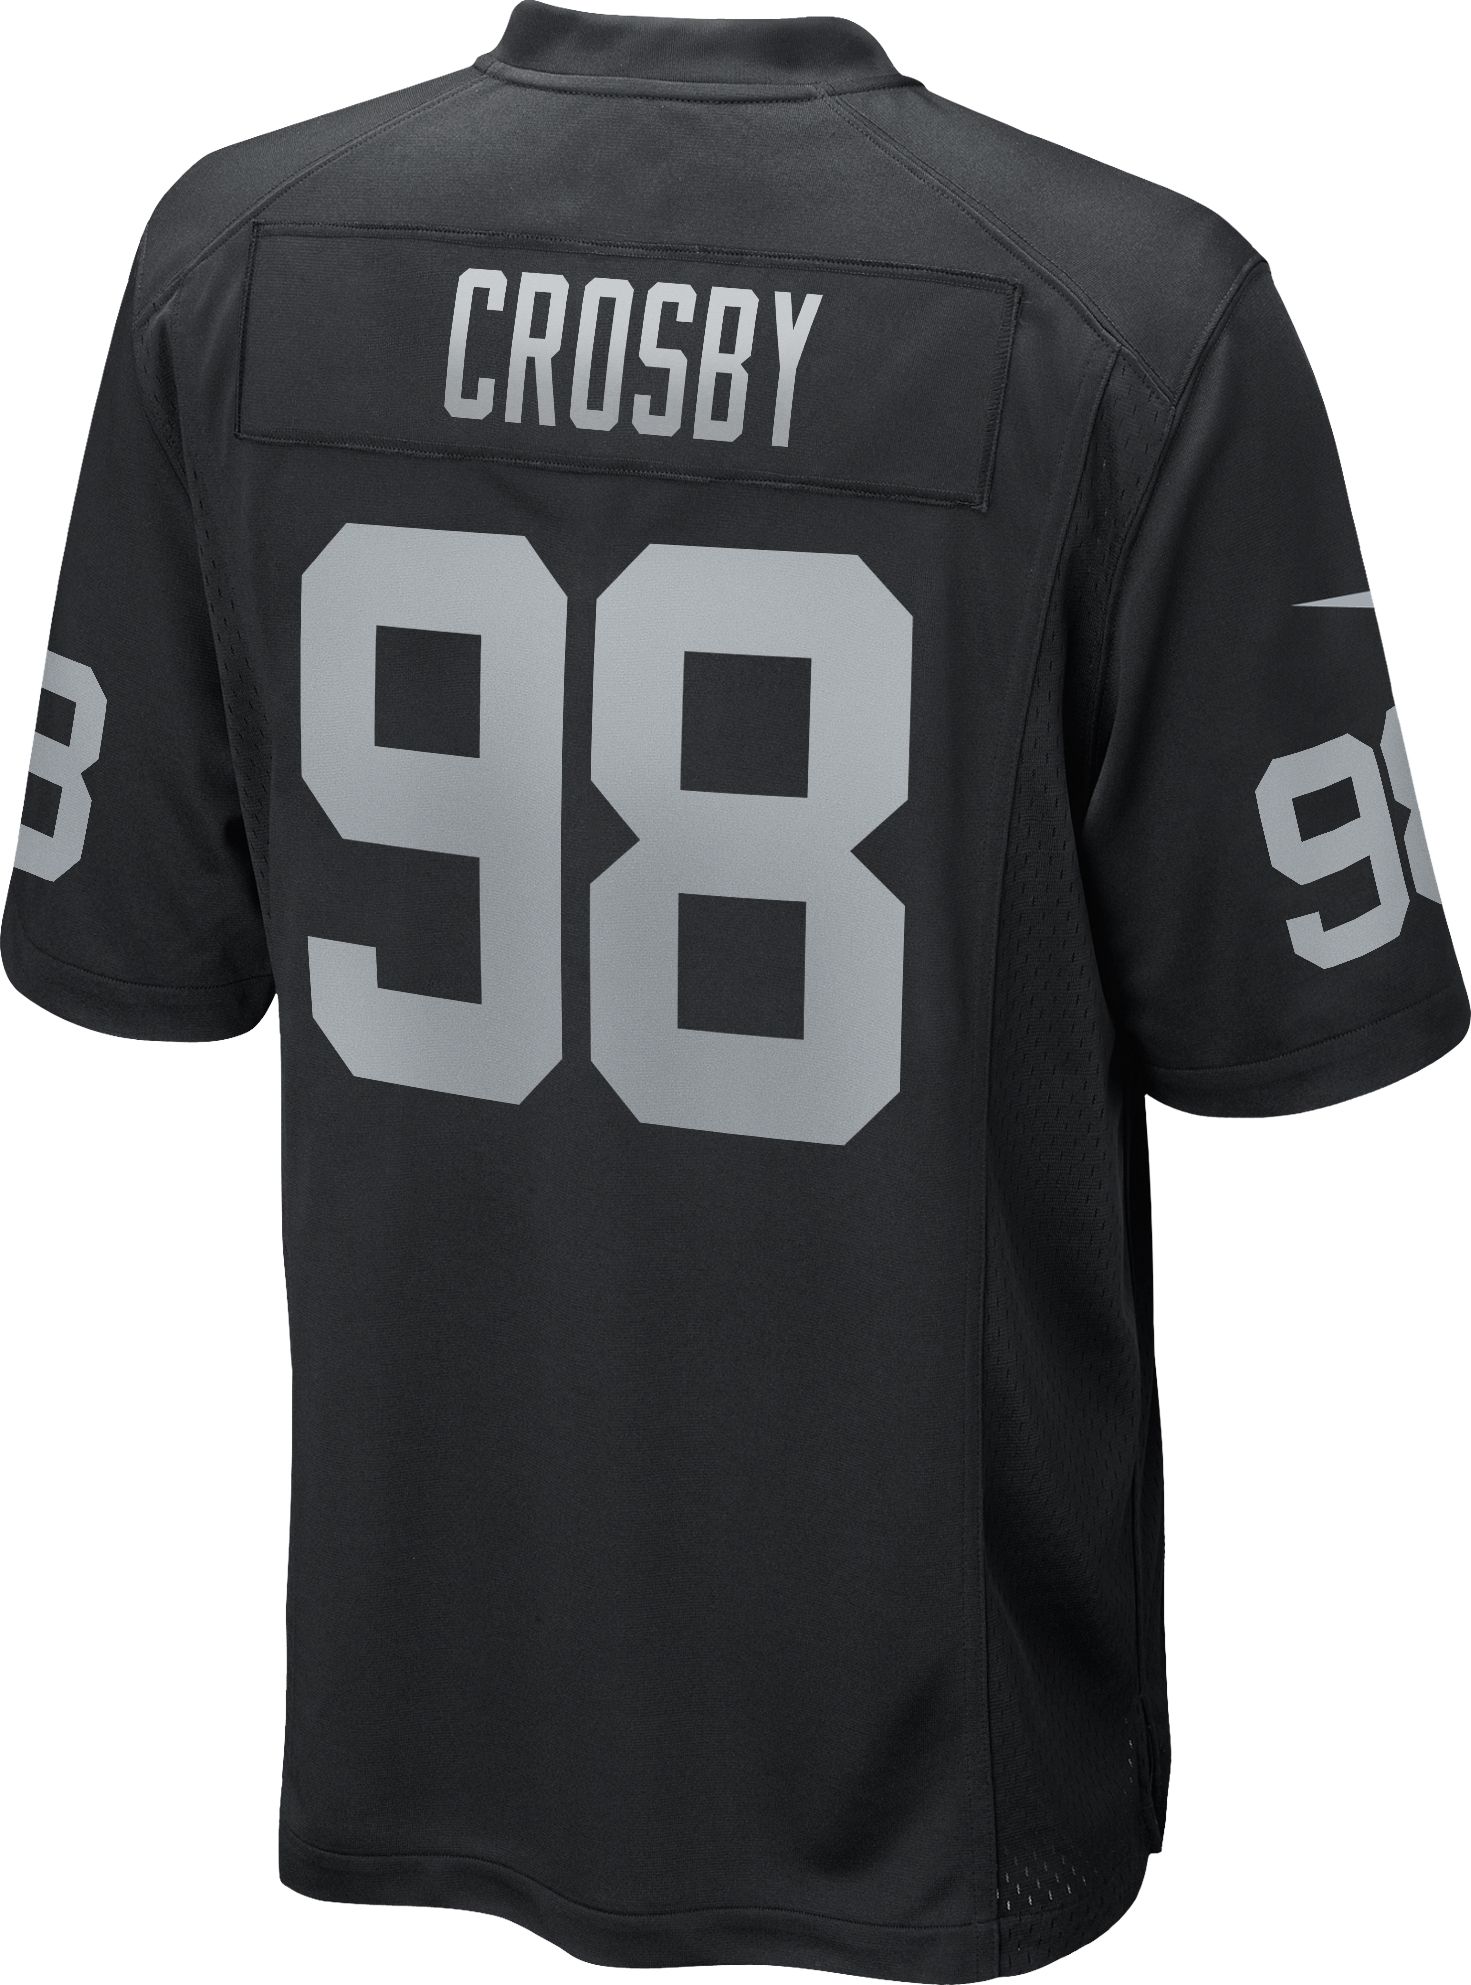 maxx crosby youth jersey